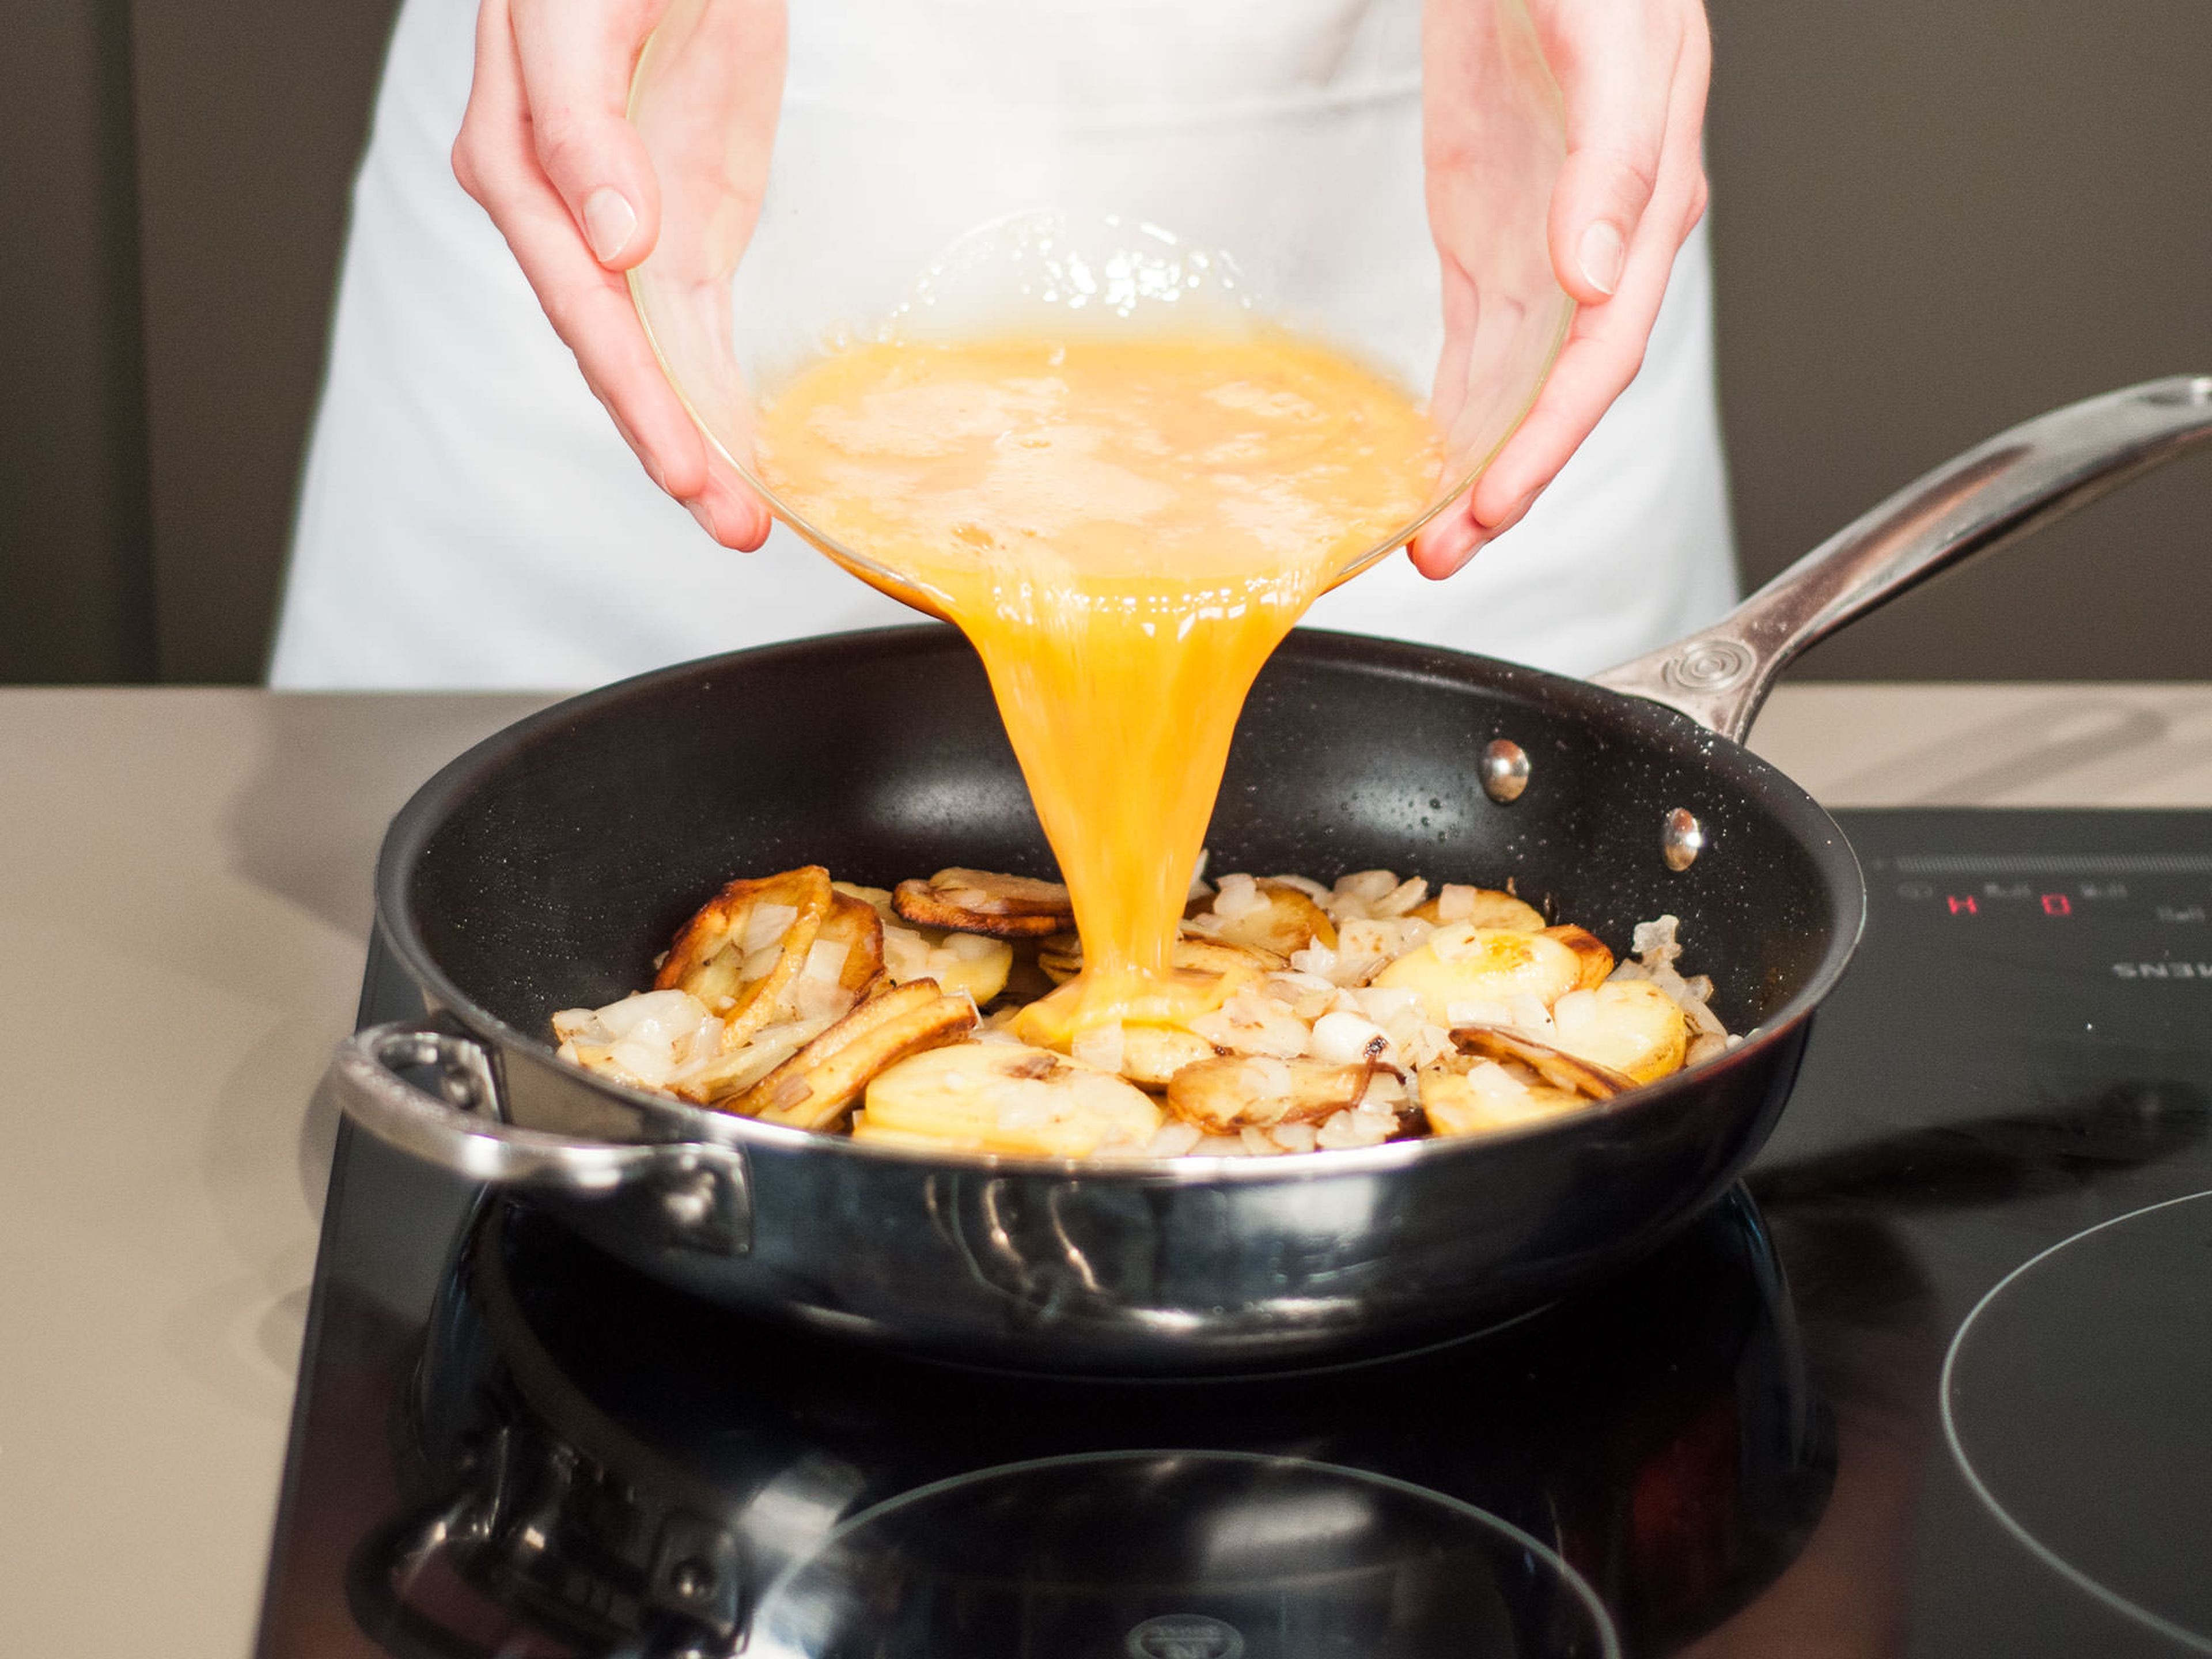 Kartoffeln mit Eiern begießen und bei geringer Hitze ca. 8 – 10 Min. anbraten, bis die Unterseite und die Ränder anfangen zu stocken. Dann mit einem Holzspatel am Rand entlang fahren. Große Servierplatte oder einen Teller obenauf legen. Mit einer Hand die Platte und mit der anderen Hand den Griff der Pfanne festhalten. Nun die Tortilla schnell auf die Servierplatte überführen und mit der rohen Seite nach unten zurück in die Pfanne gleiten lassen. Von der anderen Seite ca. 4 – 5 Min. anbraten, bis das Ei vollkommen gestockt ist. Alternativ die Pfanne bei 200°C in den Backofen schieben und ca. 10 Min. fertig backen. Auf einer Servierplatte anrichten und in Stücke schneiden.